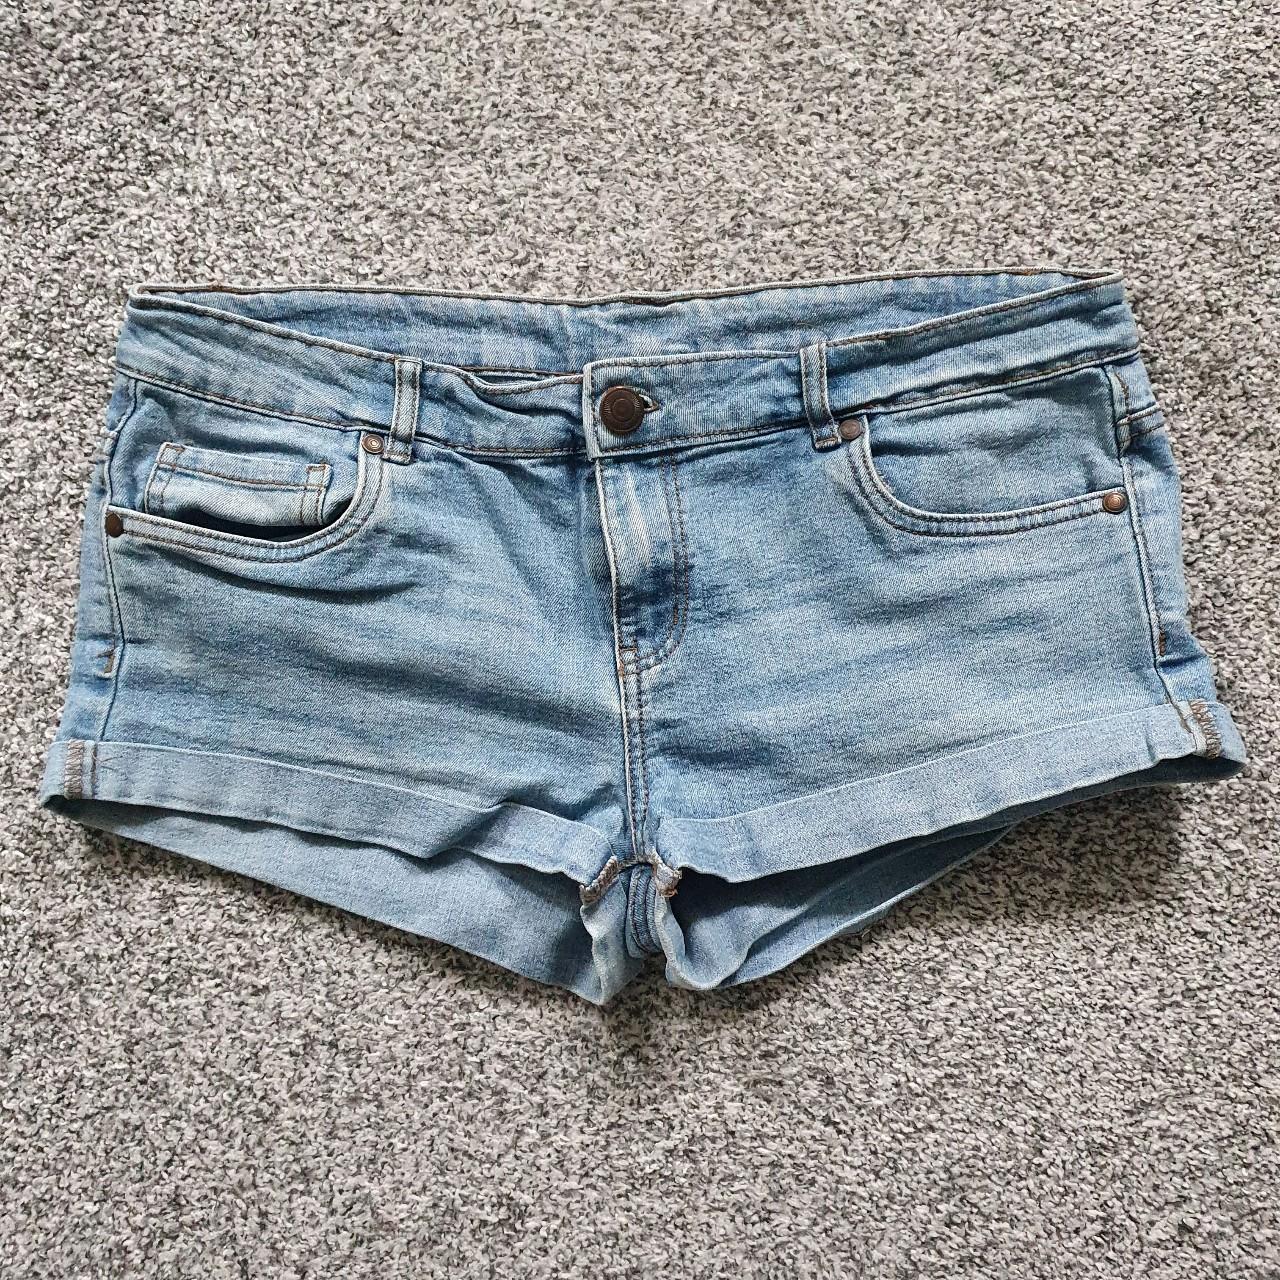 Light blue denim shorts with pockets and belt... - Depop